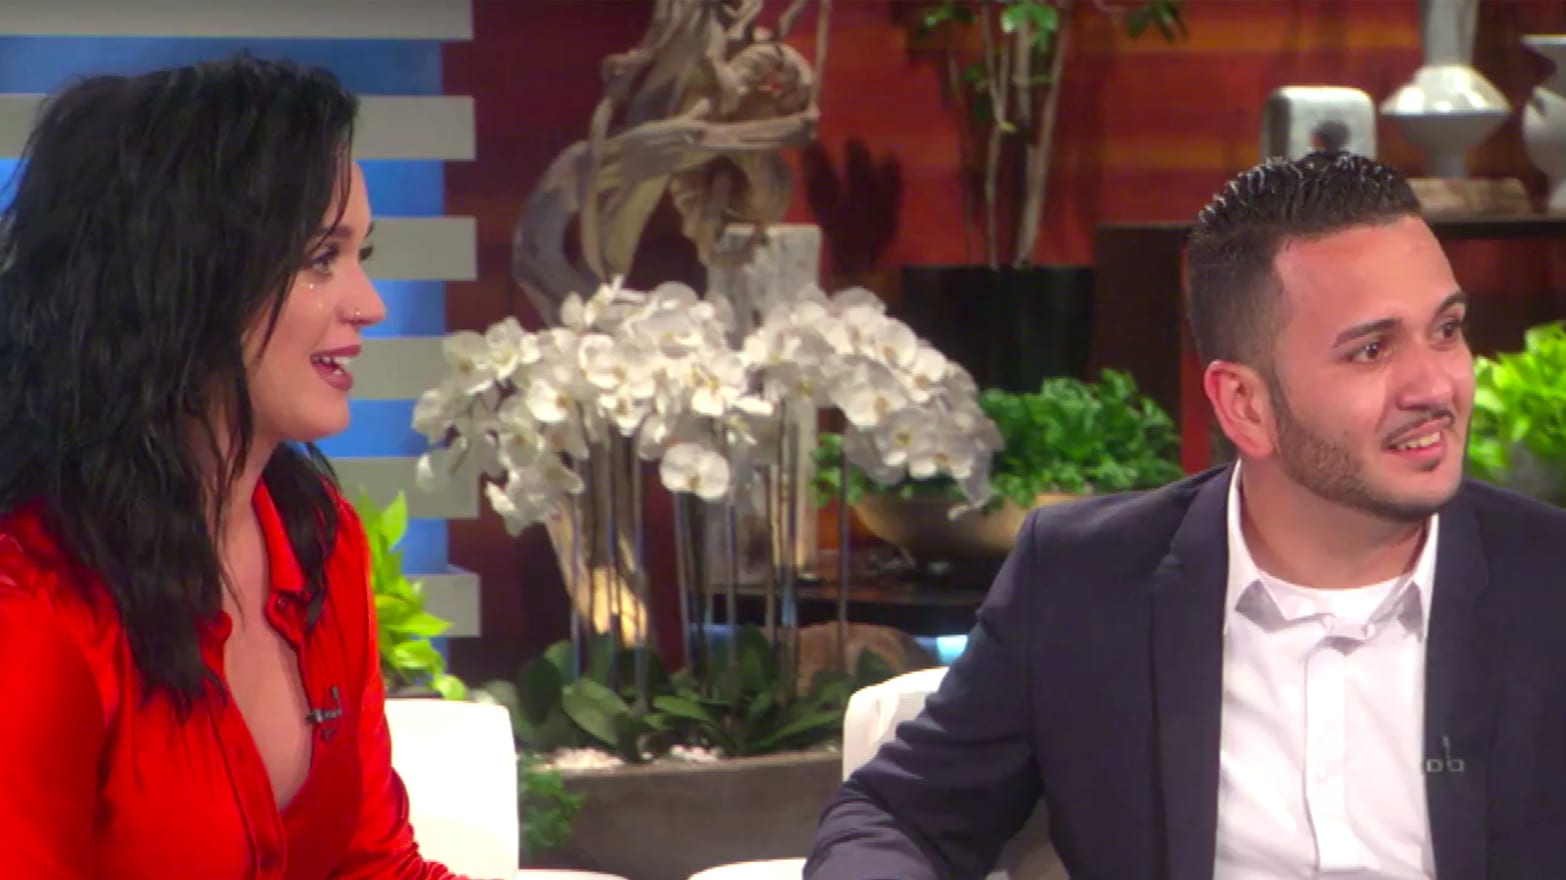 Katy Perry Surprises Orlando Shooting Survivor on ‘Ellen’